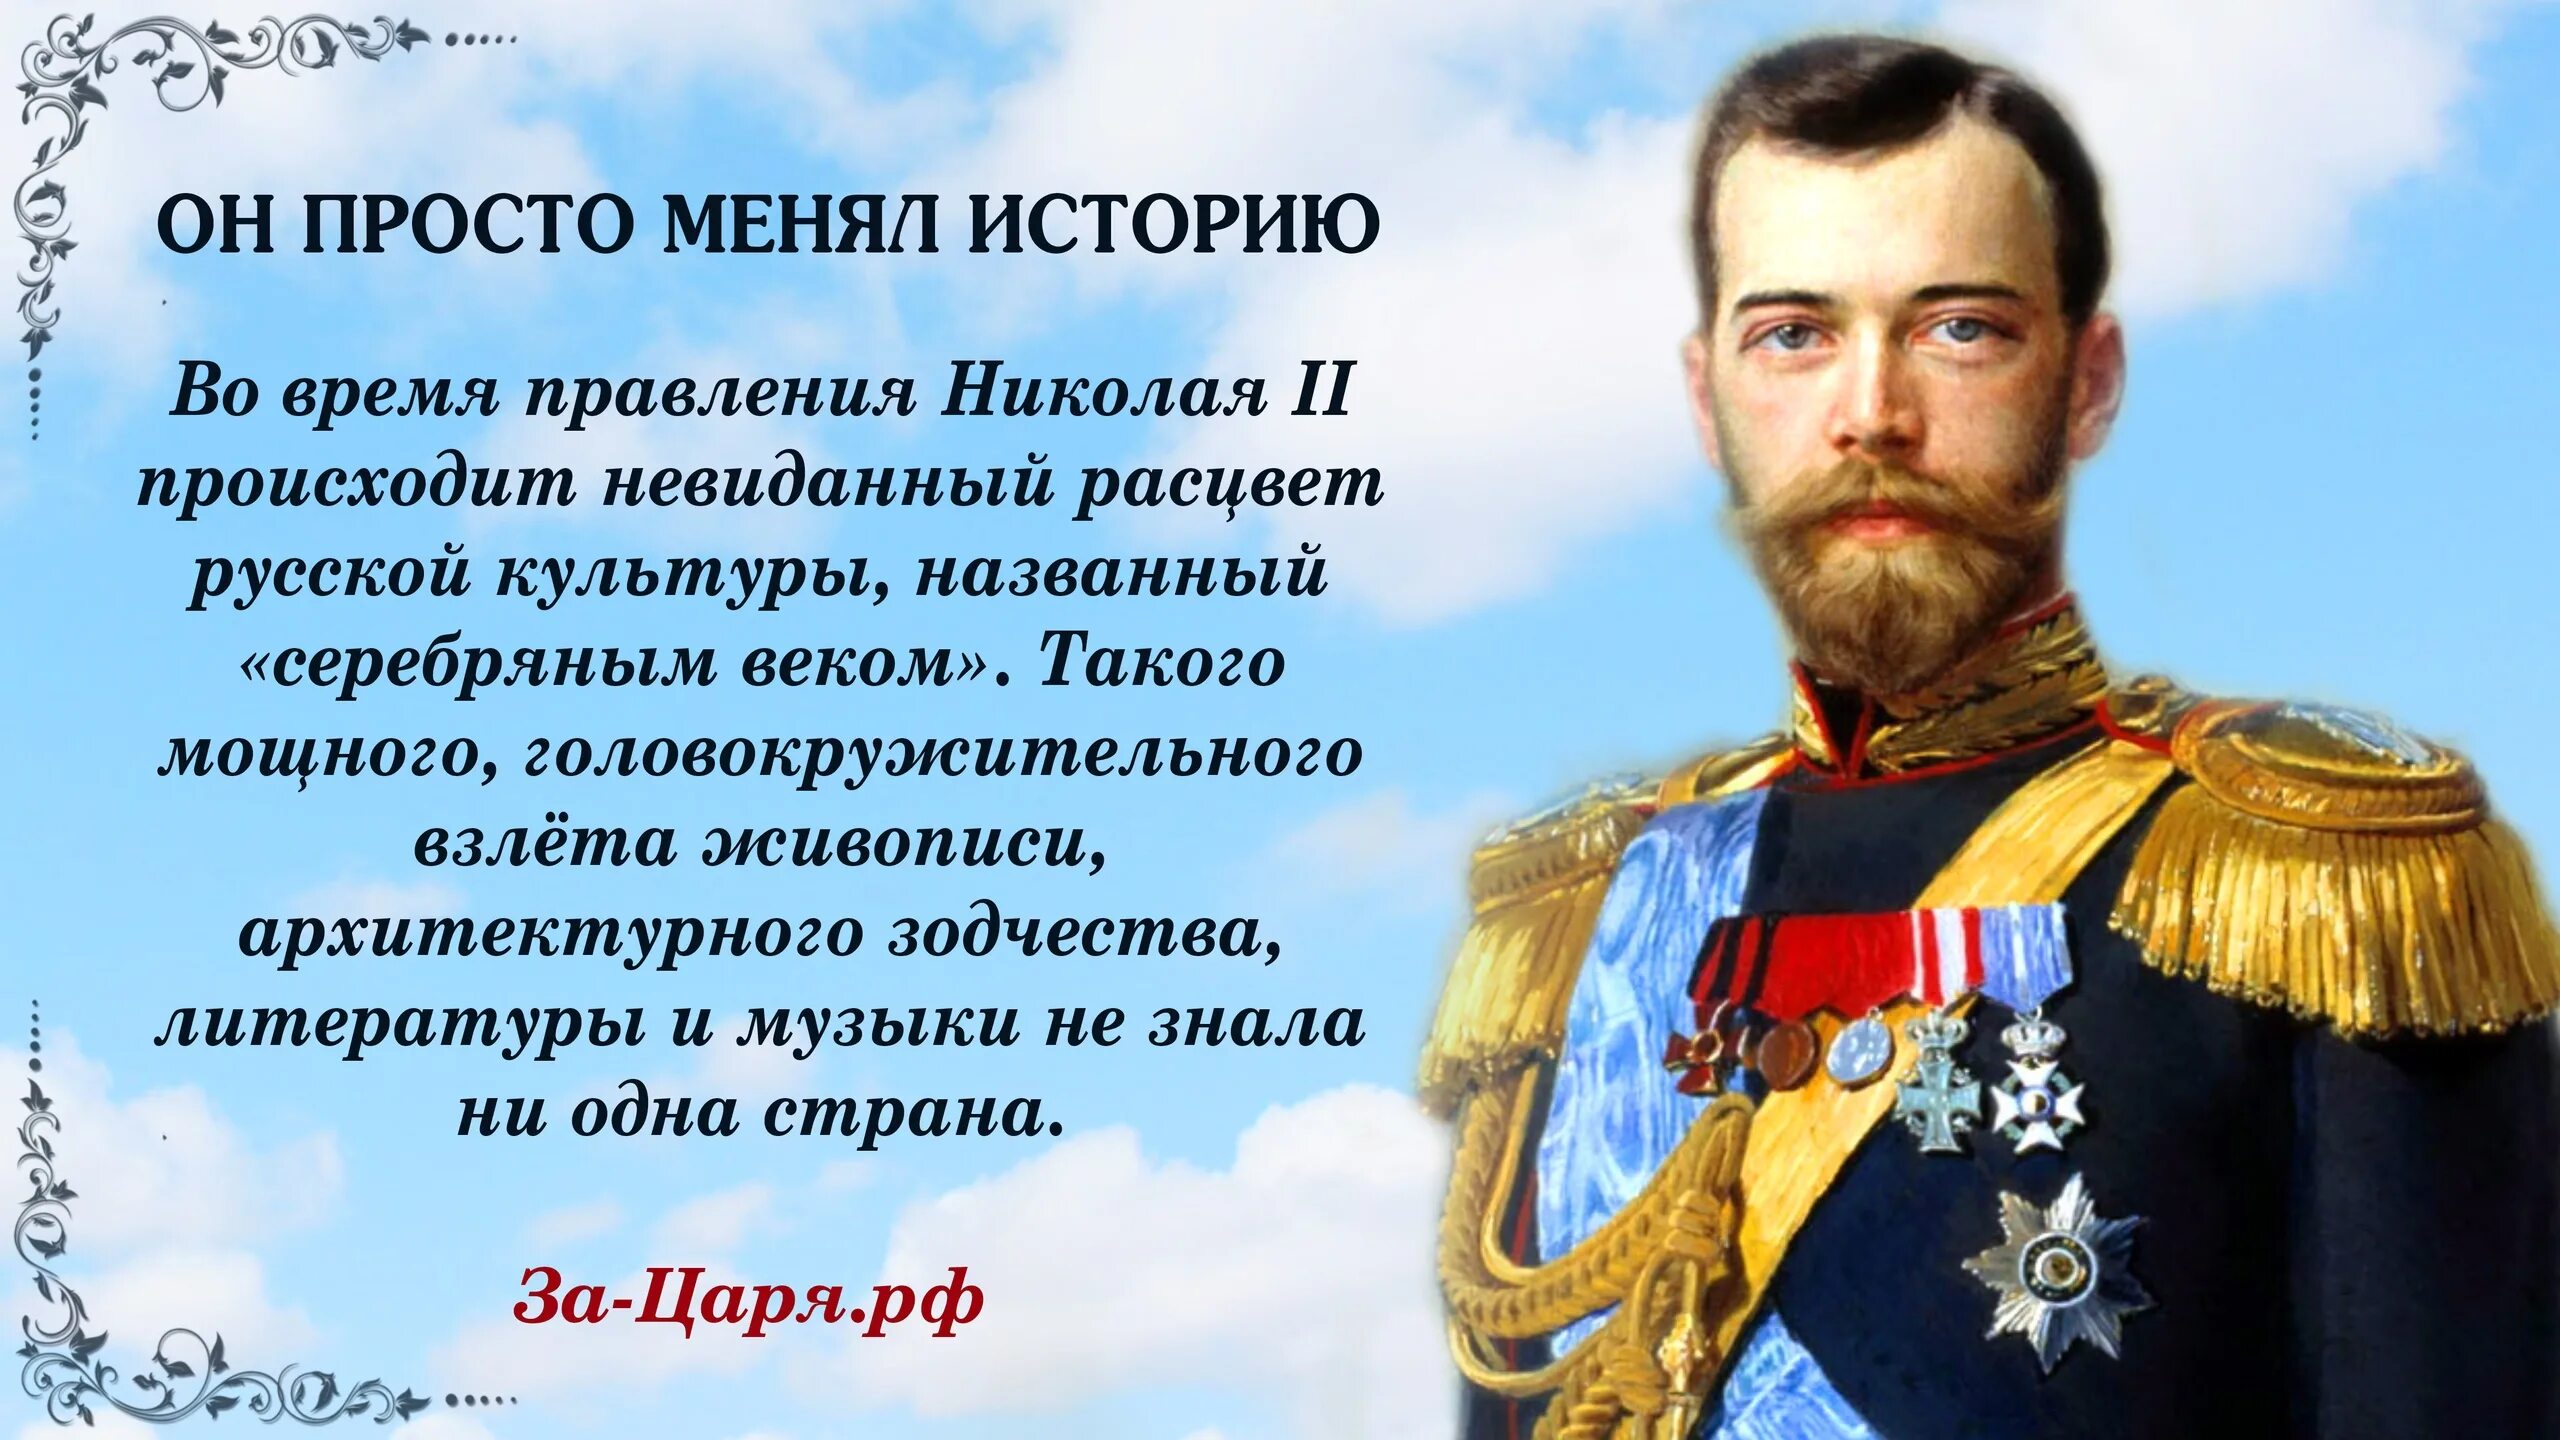 Правление Николая II (1894-1917). День рождения русского царя Николая 2. Правление Романова Николая.